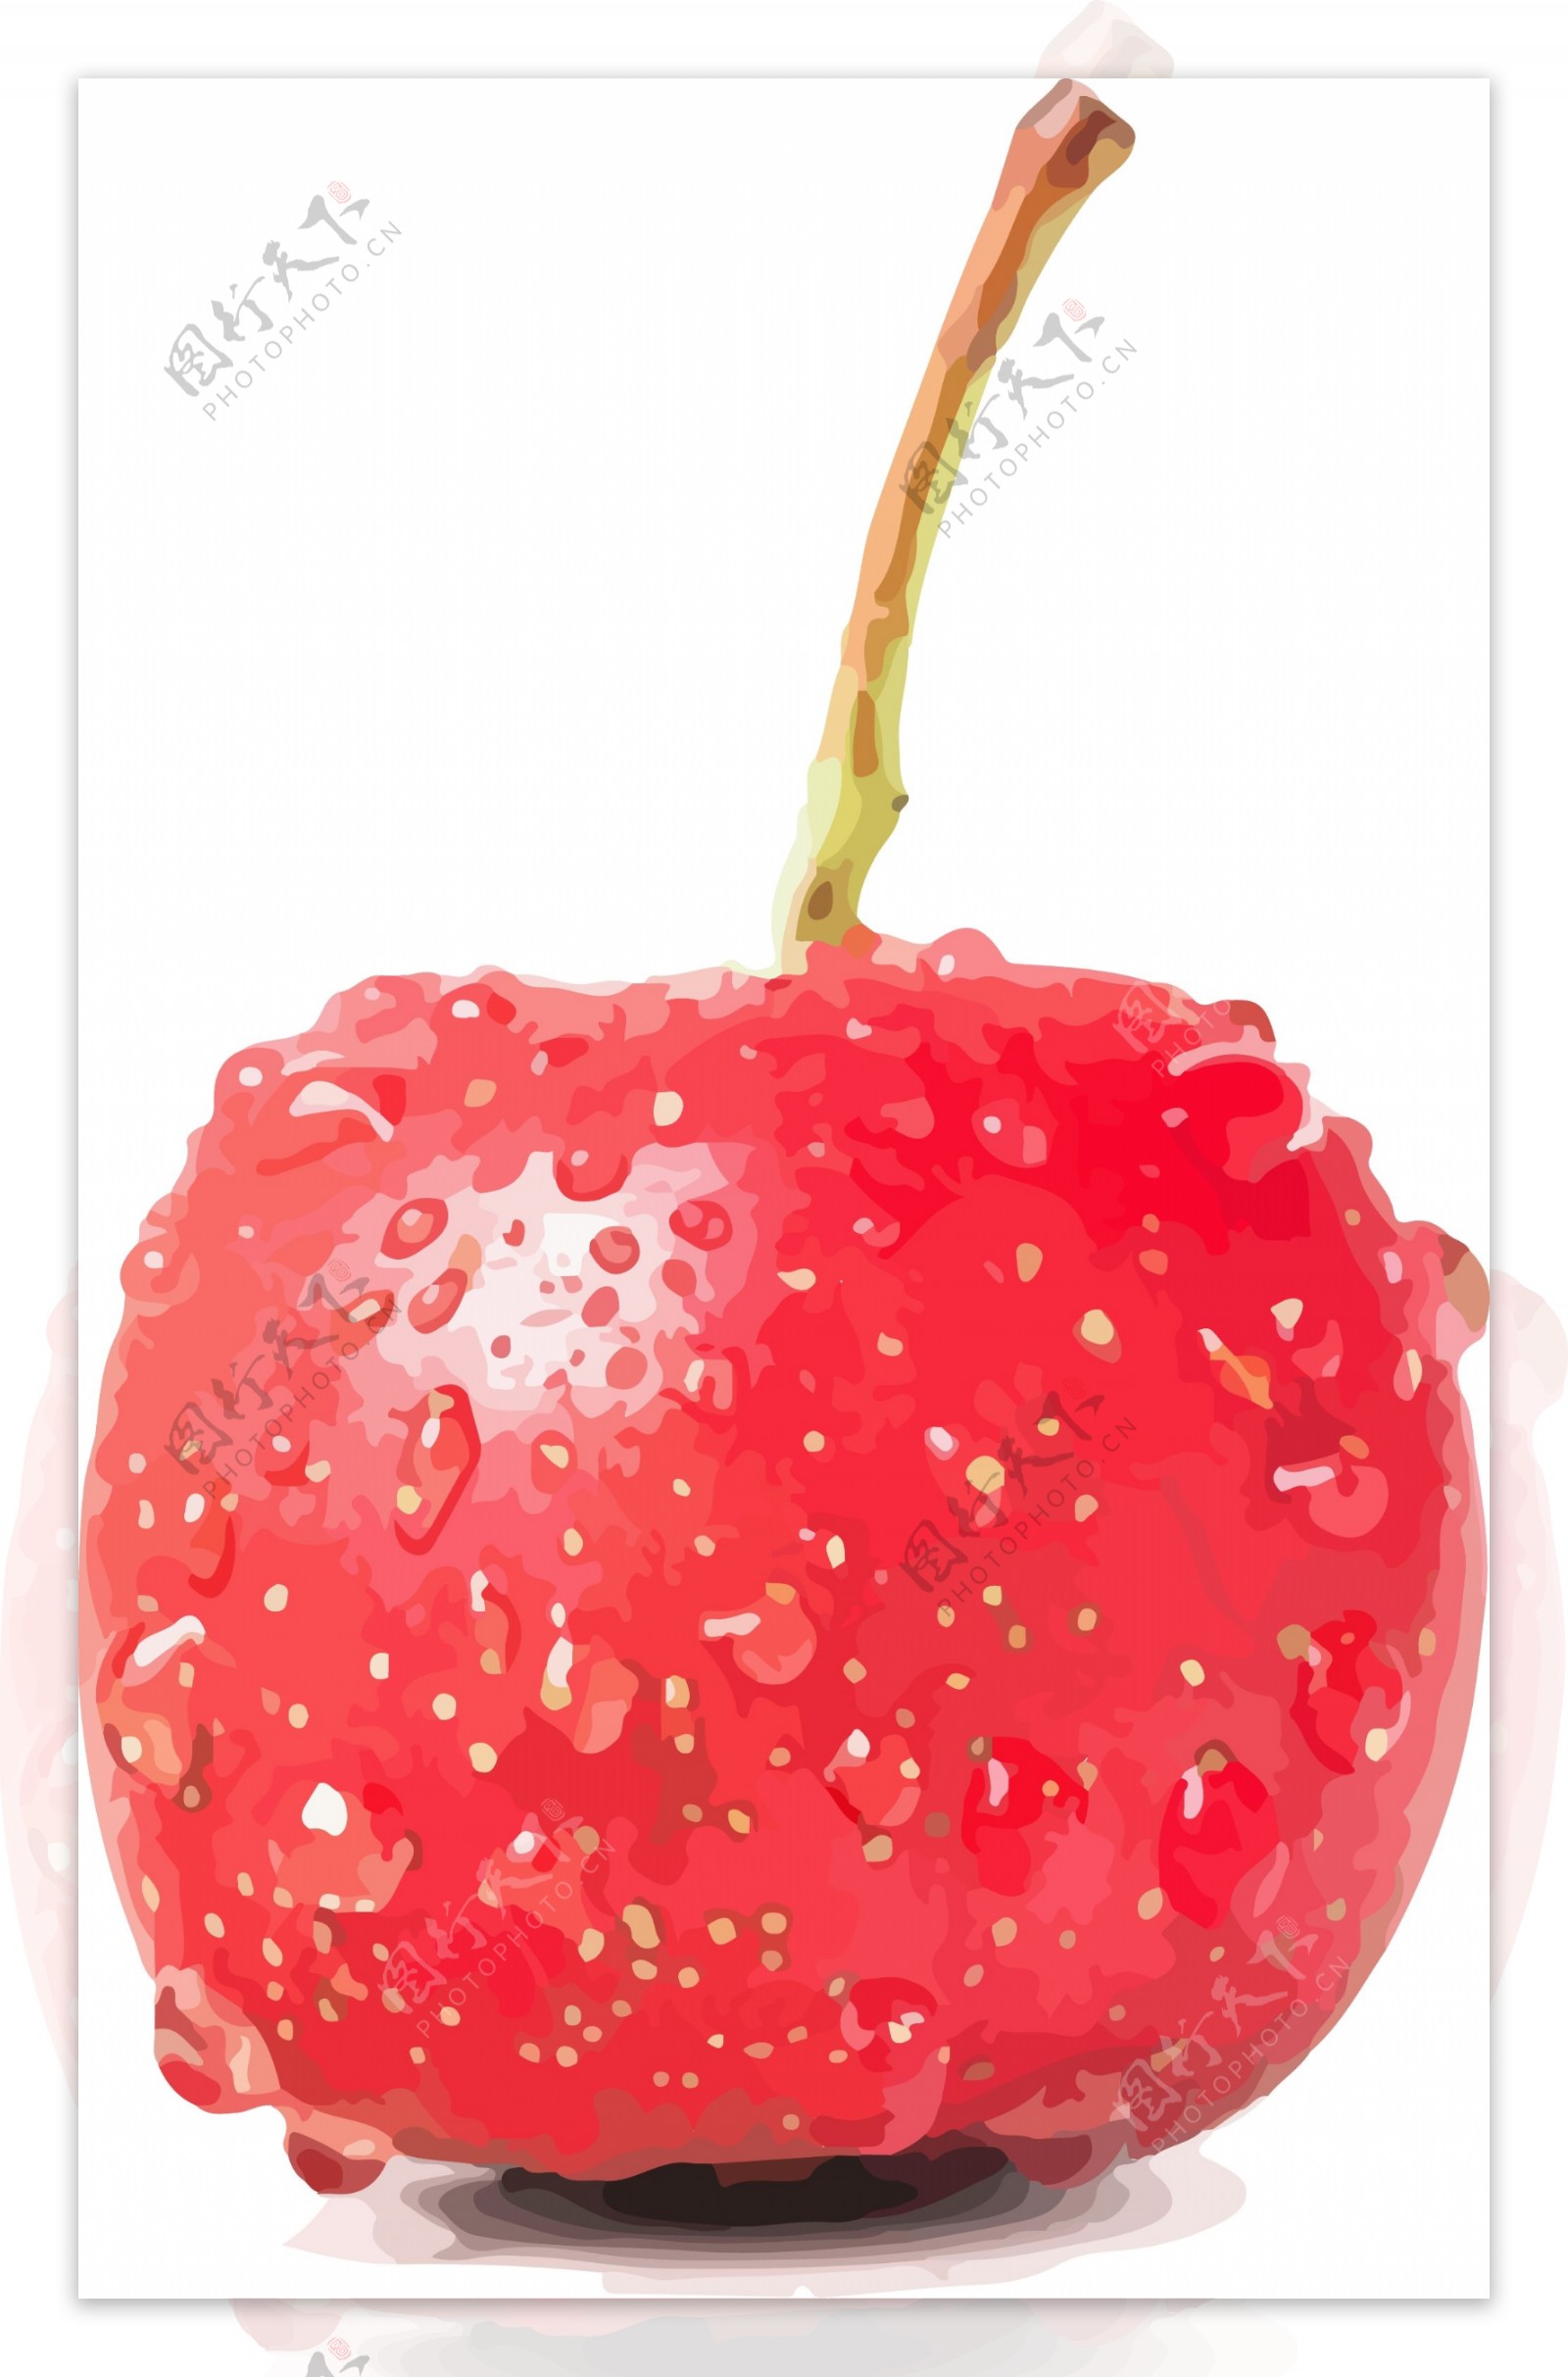 插画手绘红色山楂水果素材AI矢量水果元素